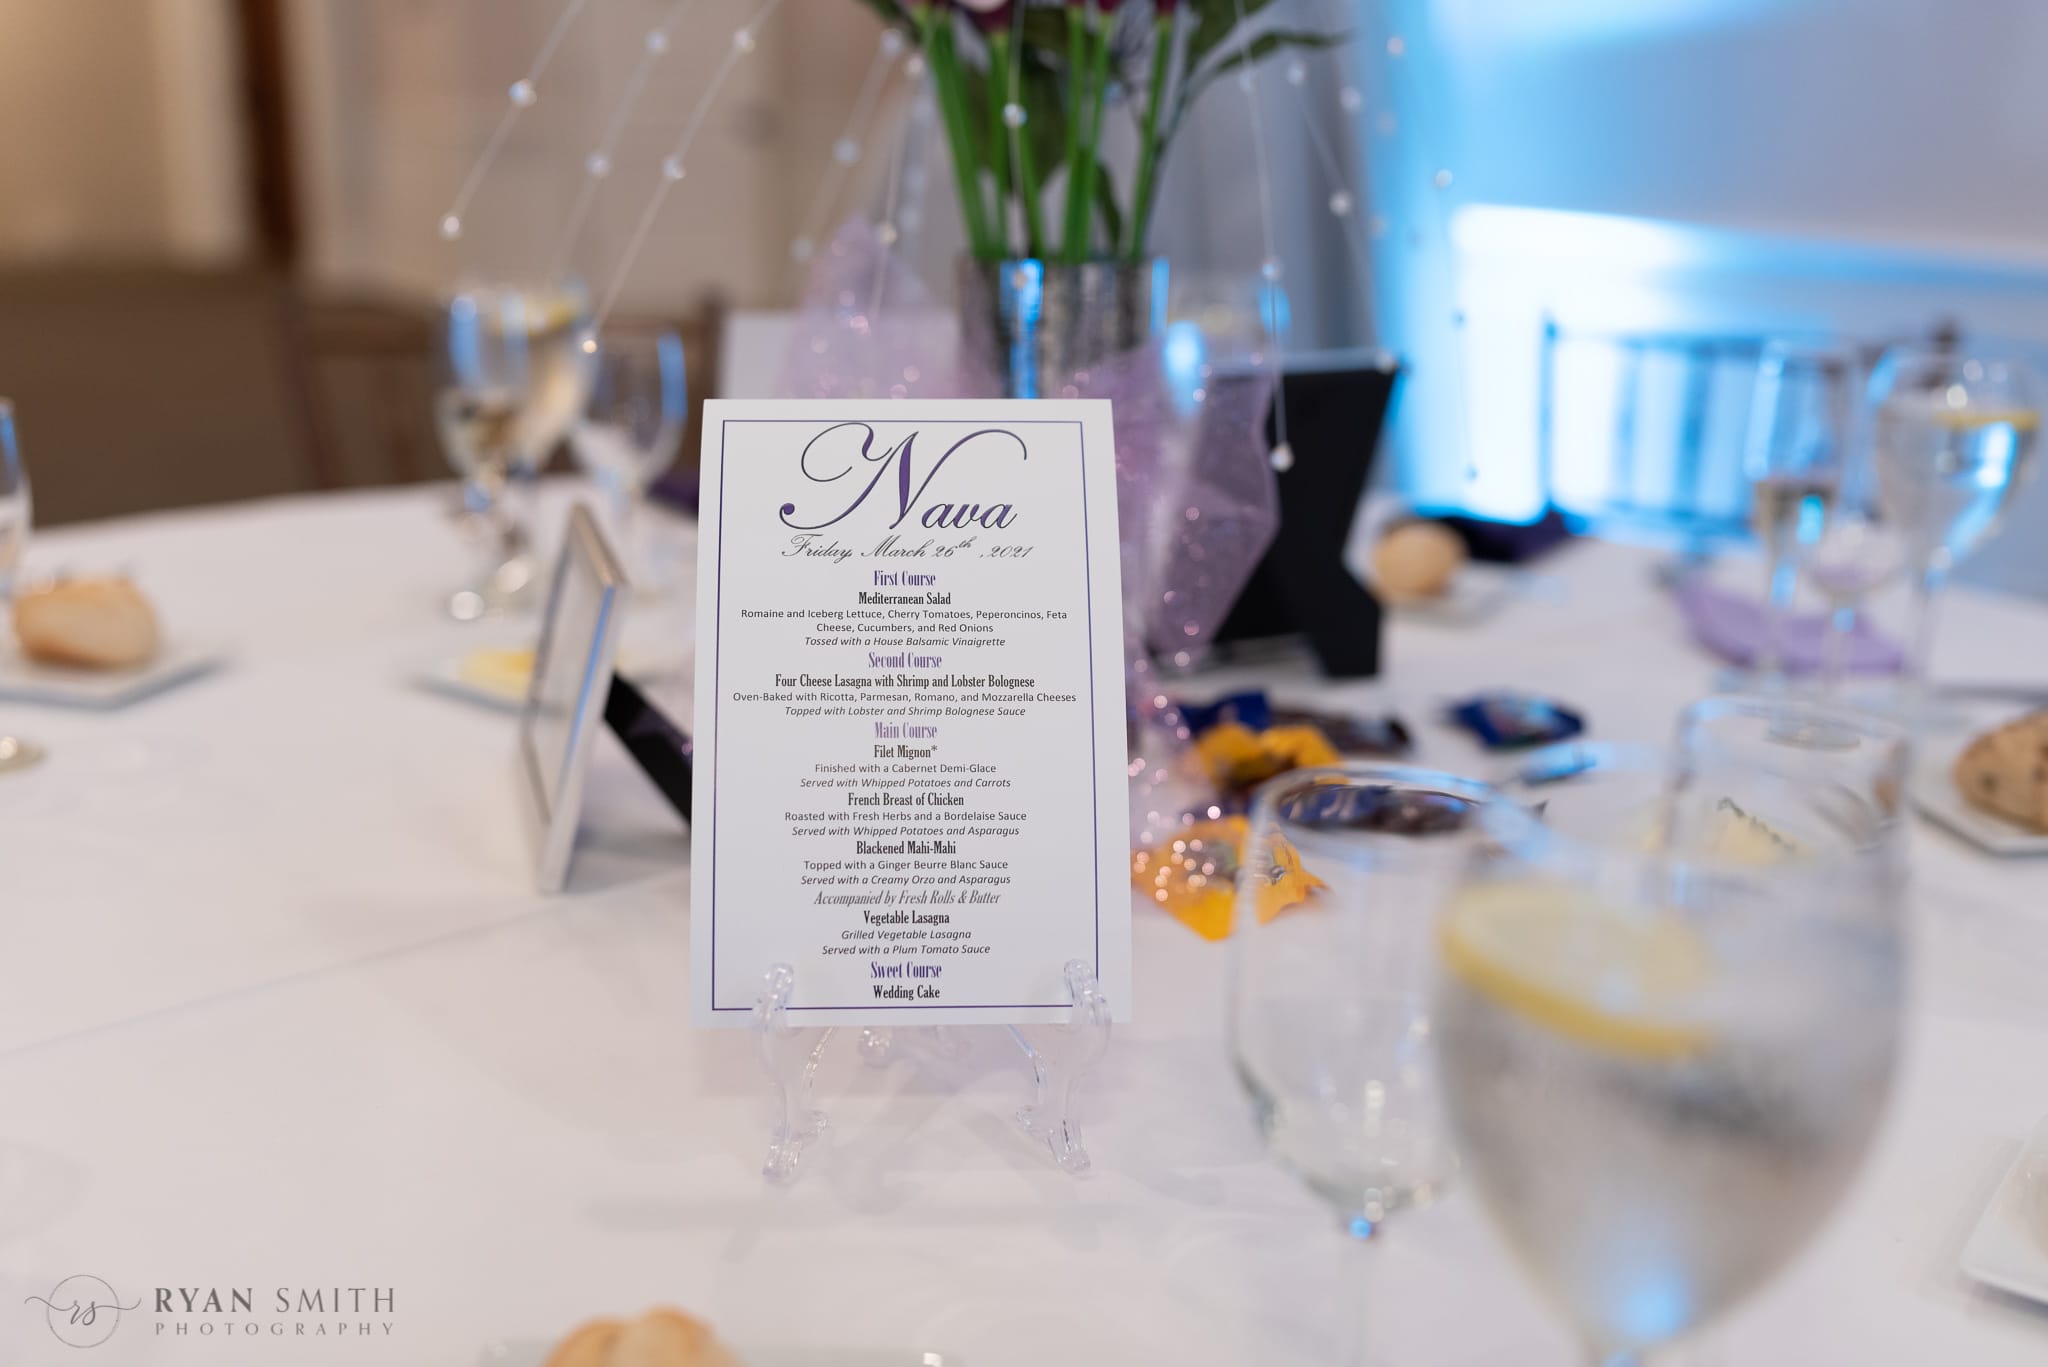 Wedding menu - 21 Main Events at North Beach